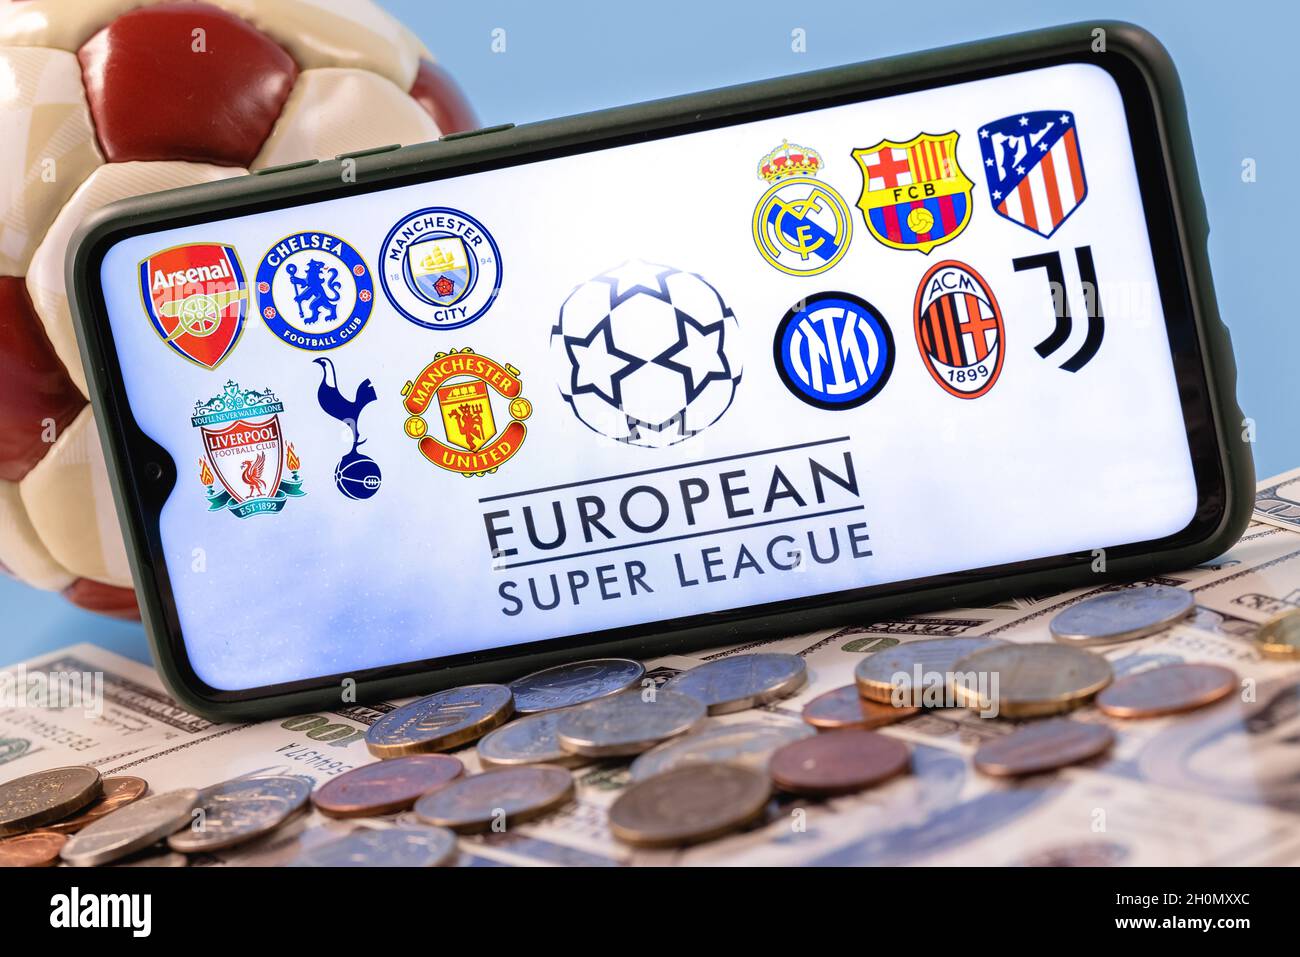 Die Super League ist ein jährlich stattfindendes Vereinsfußballwettbewerb, an dem zwanzig der besten und reichsten europäischen Fußballvereine teilnehmen. Stockfoto